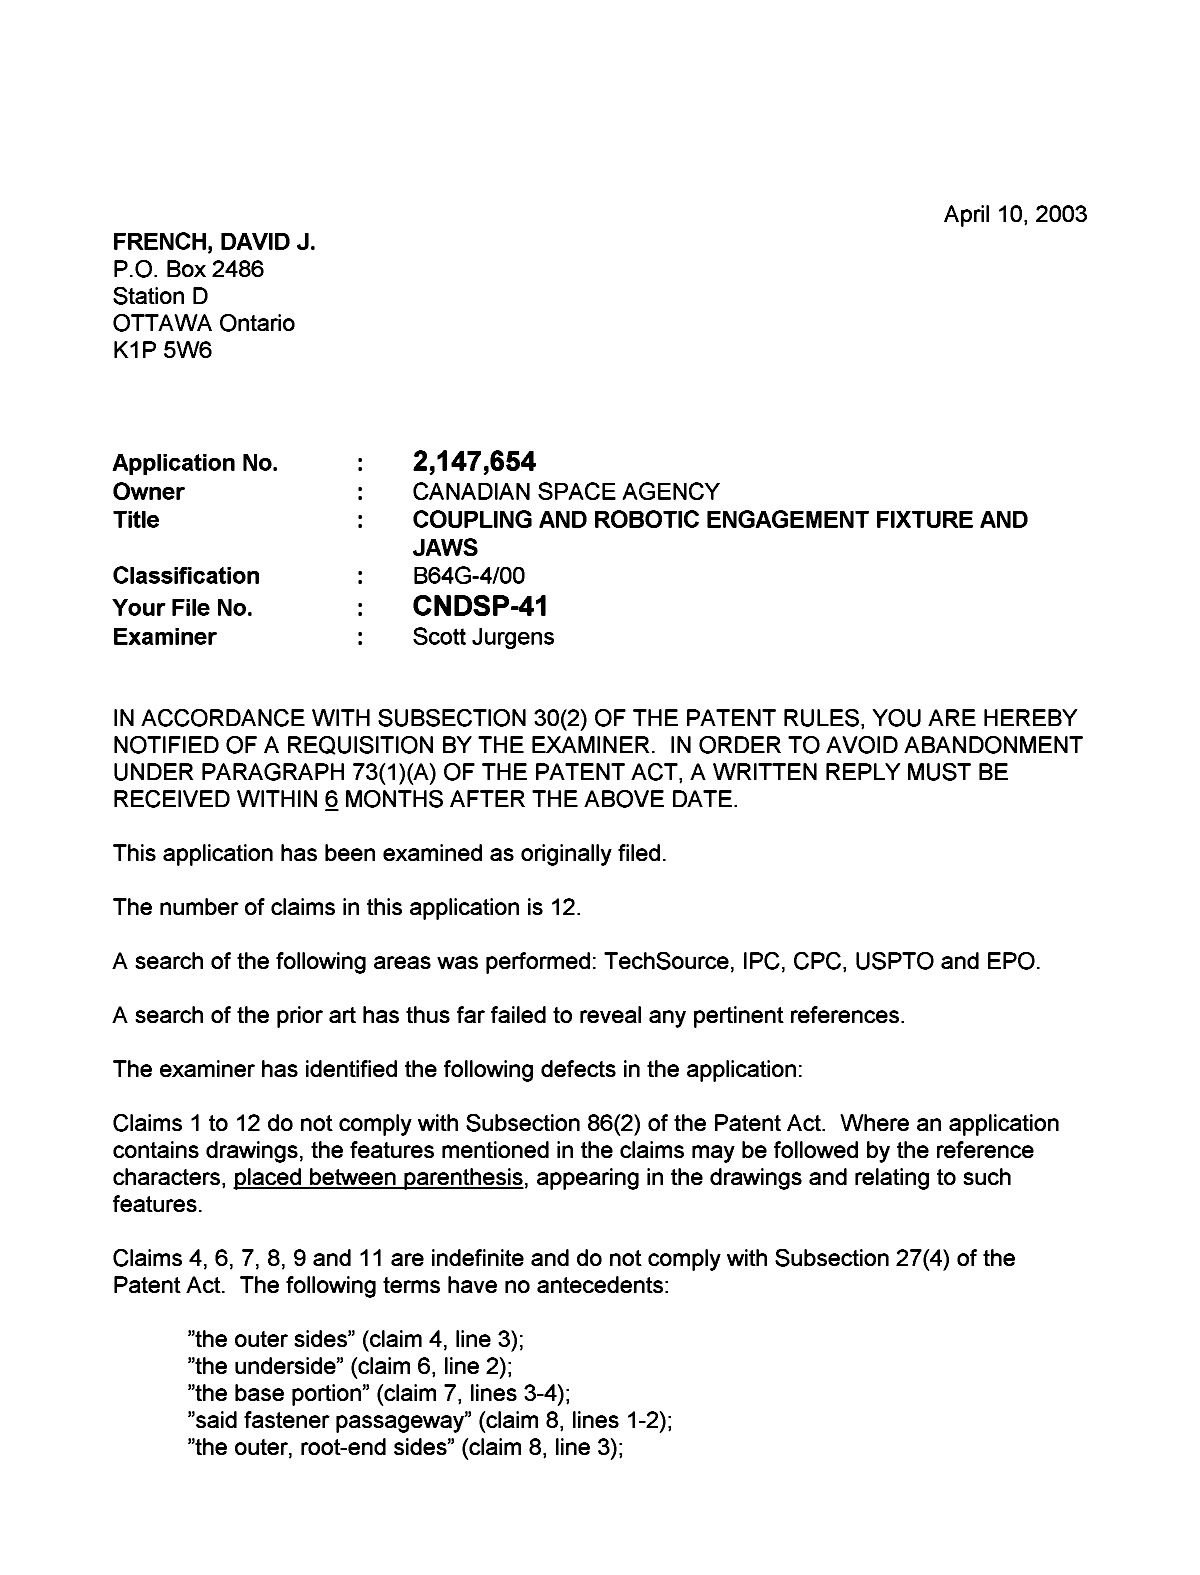 Document de brevet canadien 2147654. Poursuite-Amendment 20021210. Image 1 de 2